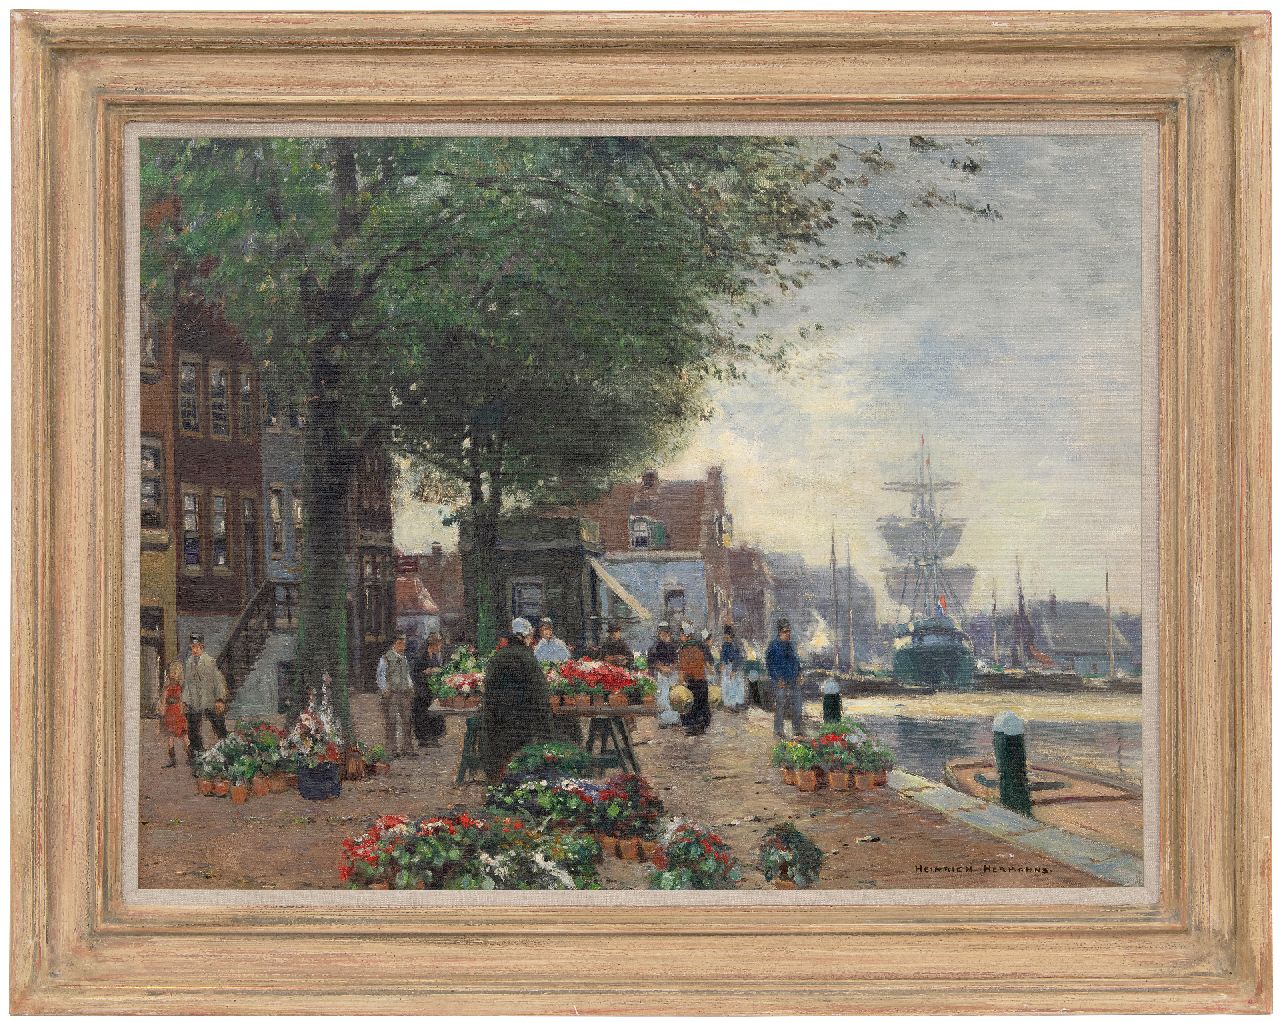 Hermanns H.  | Heinrich Hermanns | Schilderijen te koop aangeboden | Bloemenmarkt op een havenkade, olieverf op doek 60,5 x 80,7 cm, gesigneerd rechtsonder